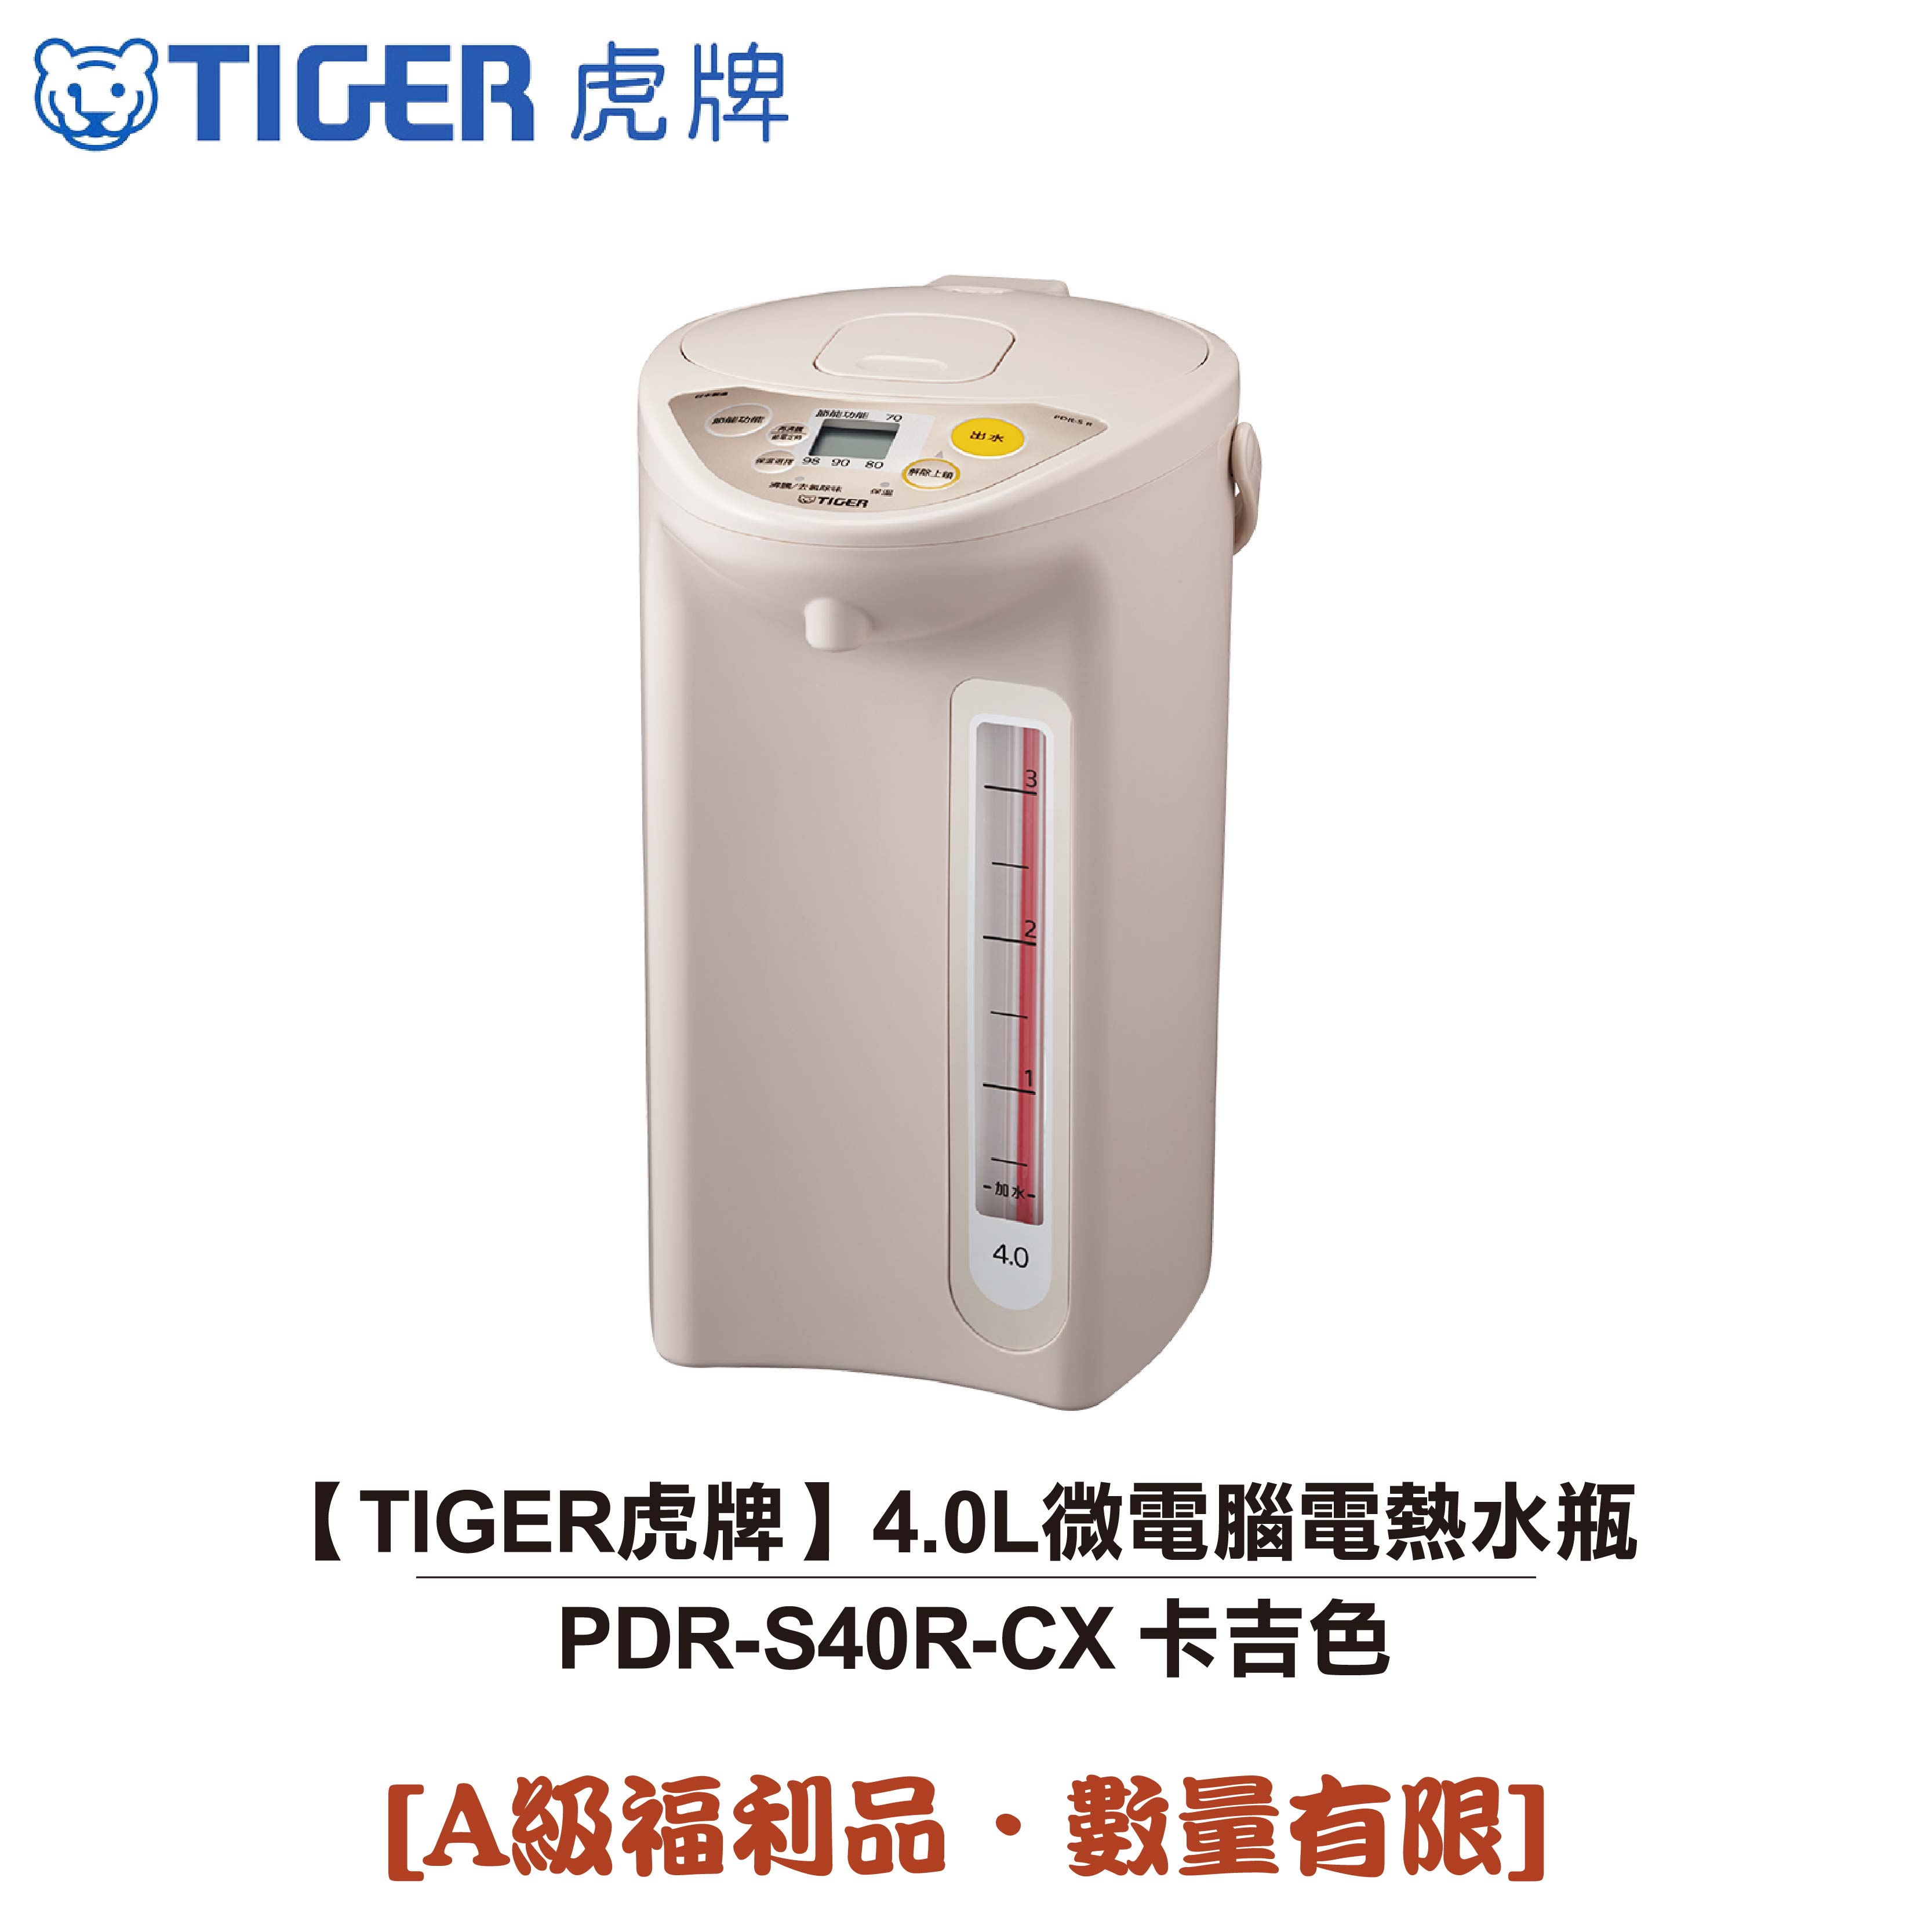 【TIGER虎牌】日本製 4.0L微電腦電熱水瓶 PDR-S40R-CX 卡吉色 [A級福利品‧數量有限]